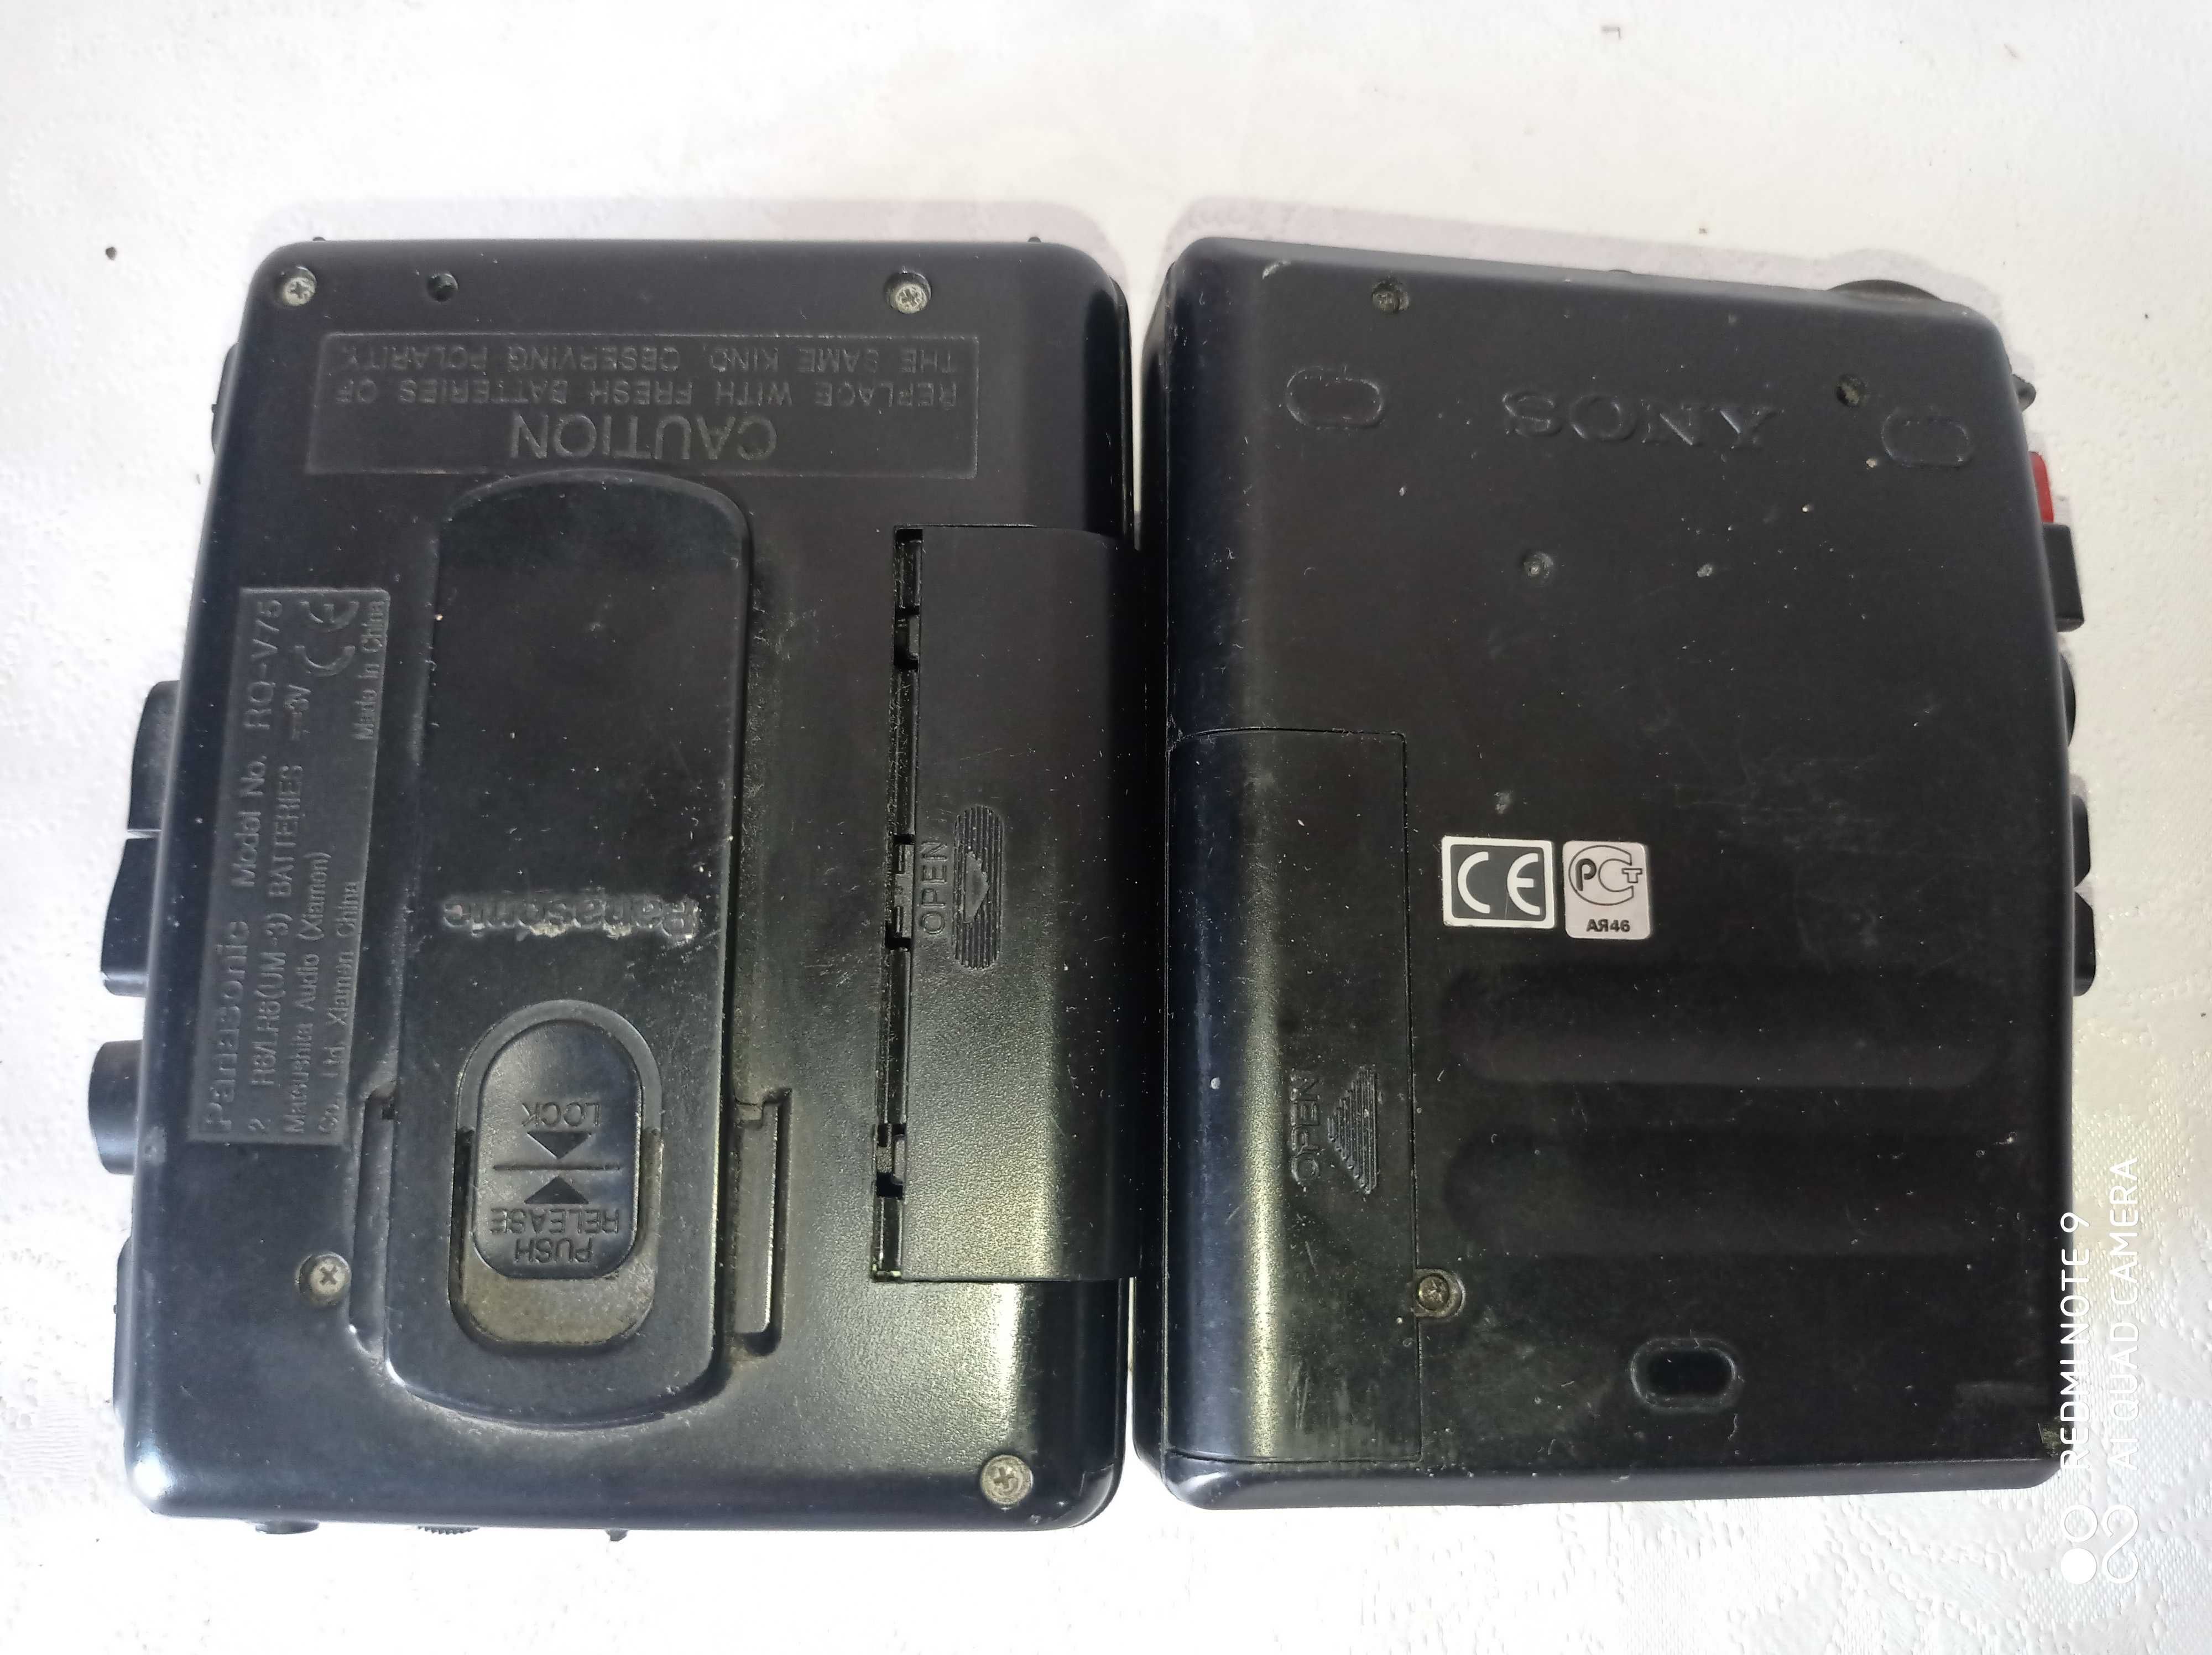 Panasonic XBS + Sony TCM-323 - stare walkmany do kolekcji.